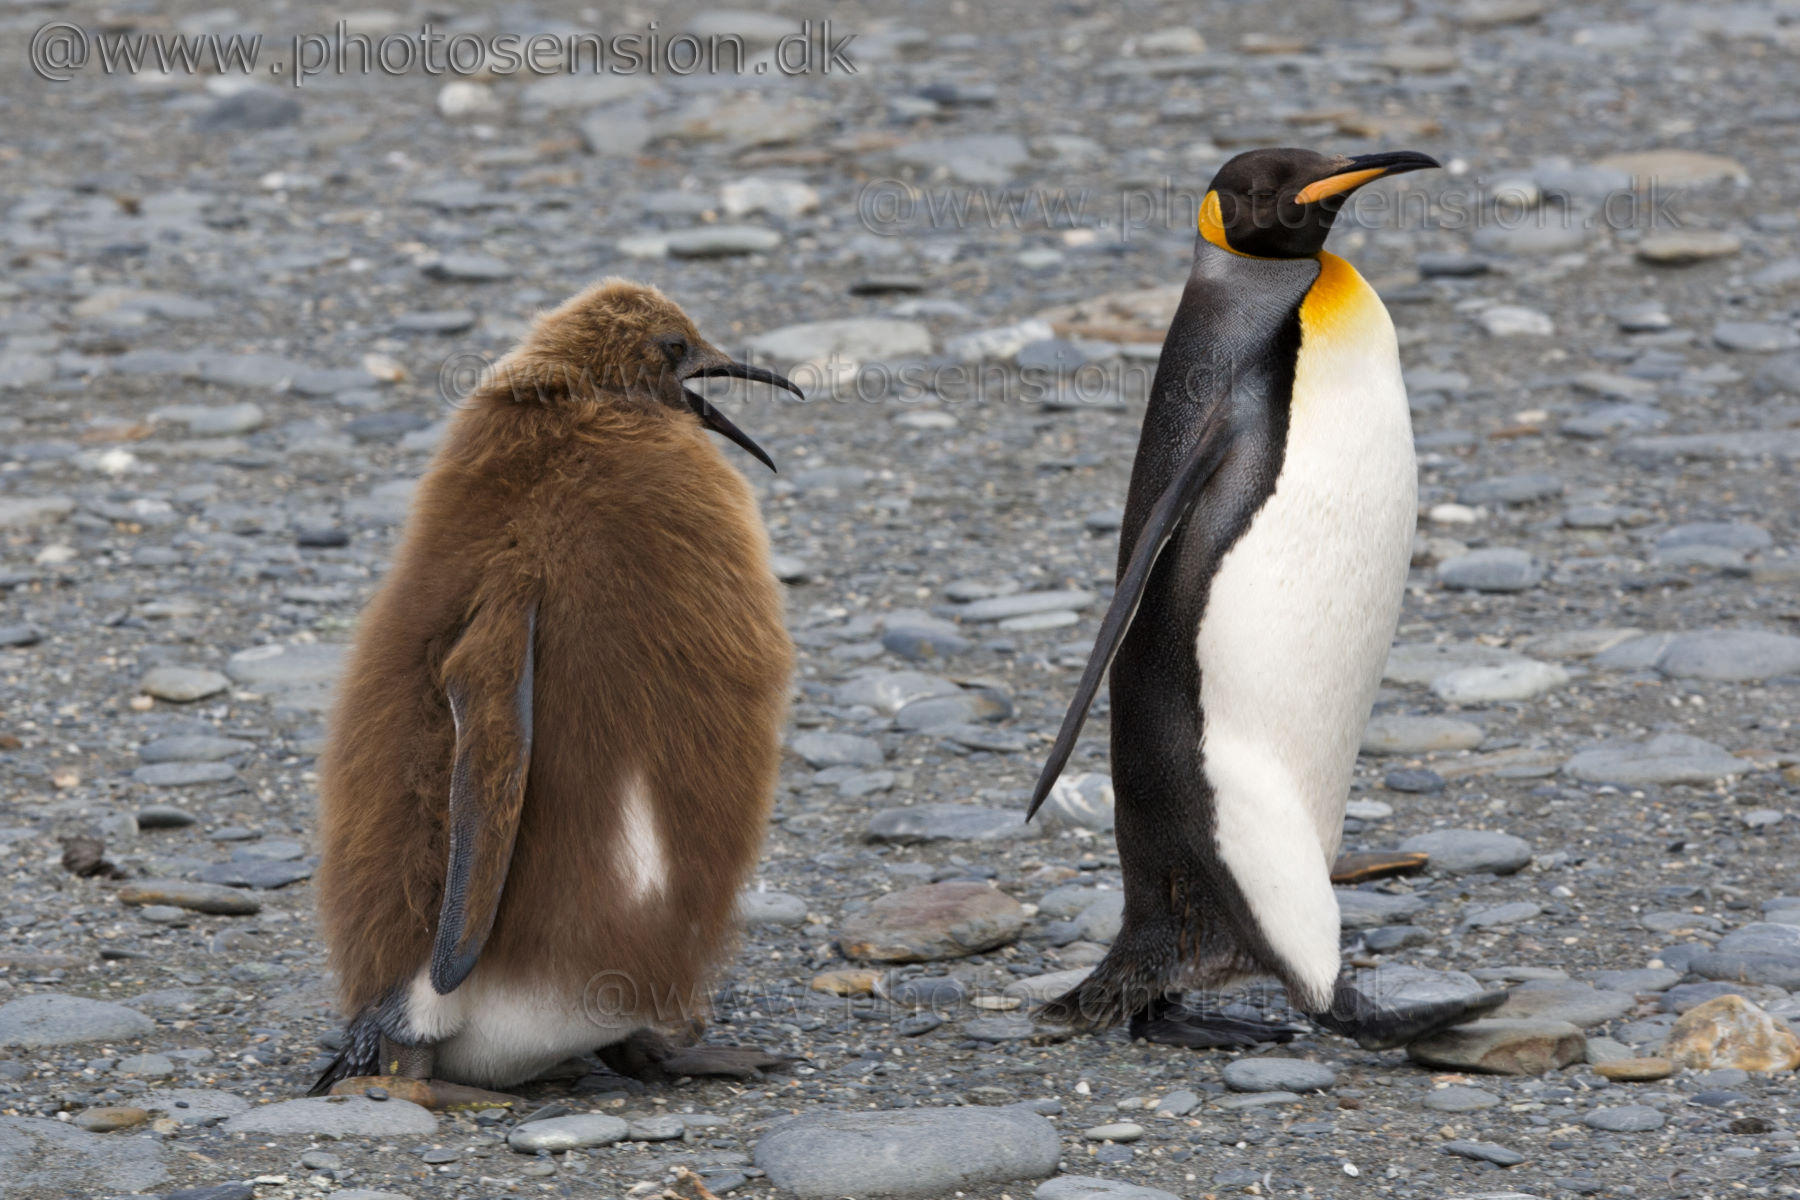 Teenage King Penguin chick begging for food